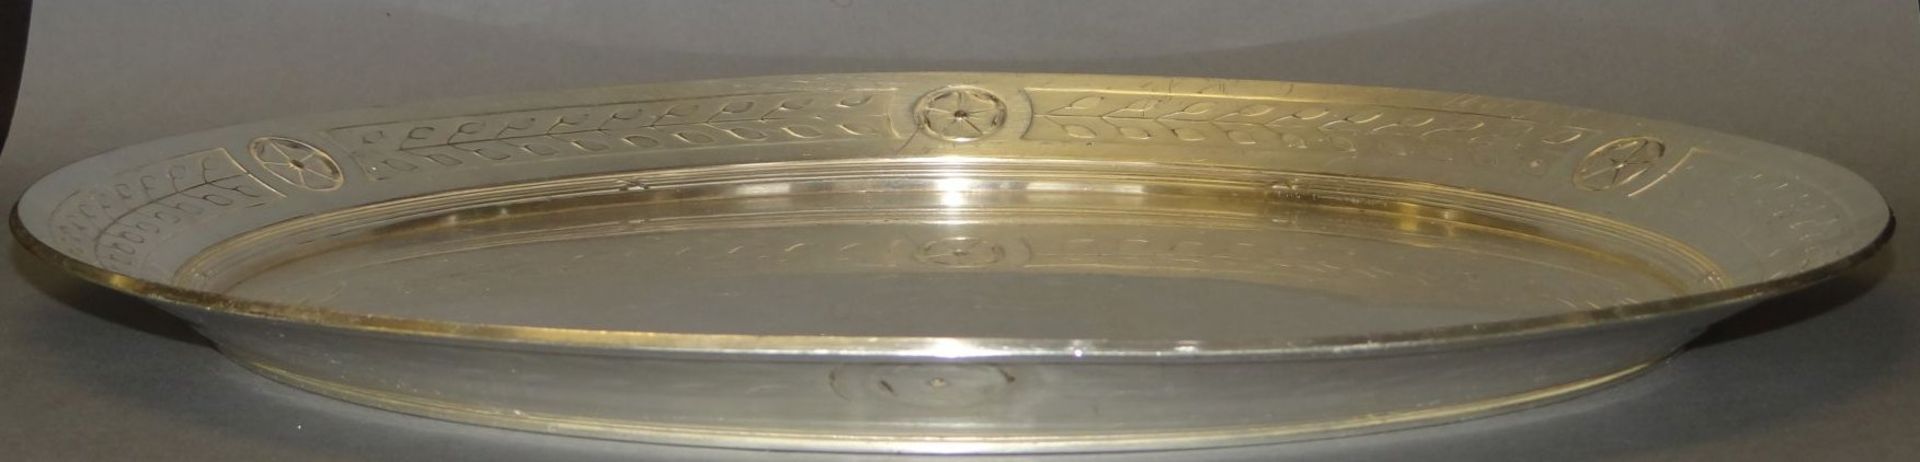 grosse versilb. Platte, Alters-u. Gebrauchsspuren, D-39 cm - Bild 3 aus 5